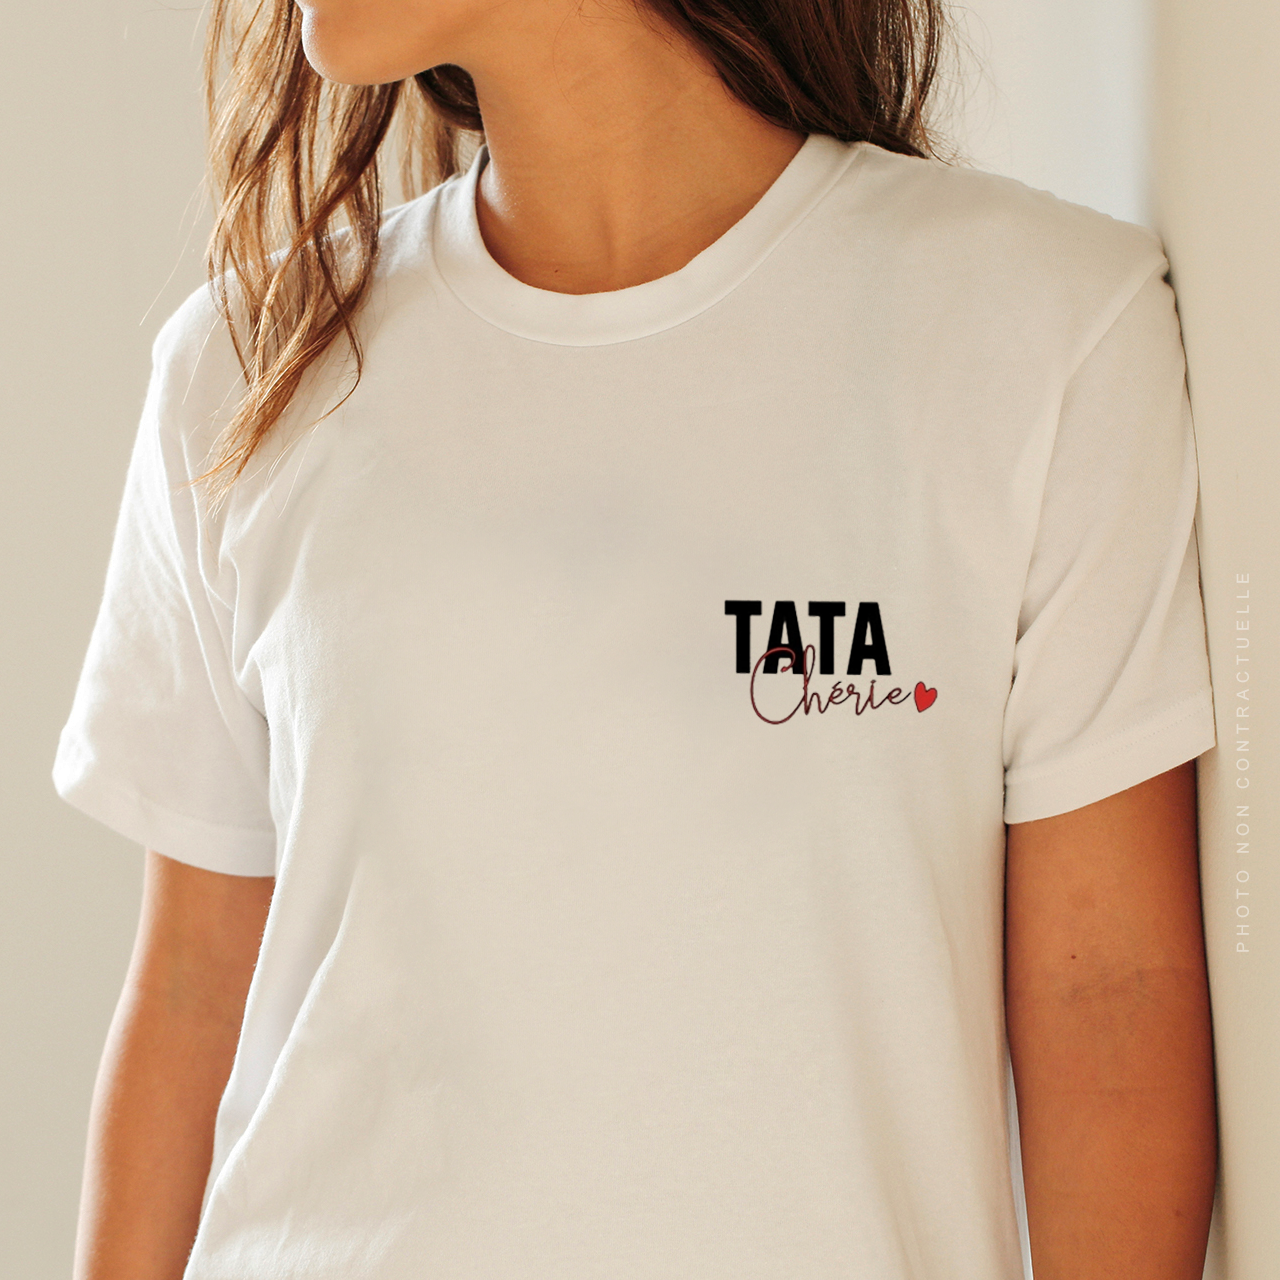 T-shirt / Tata chérie